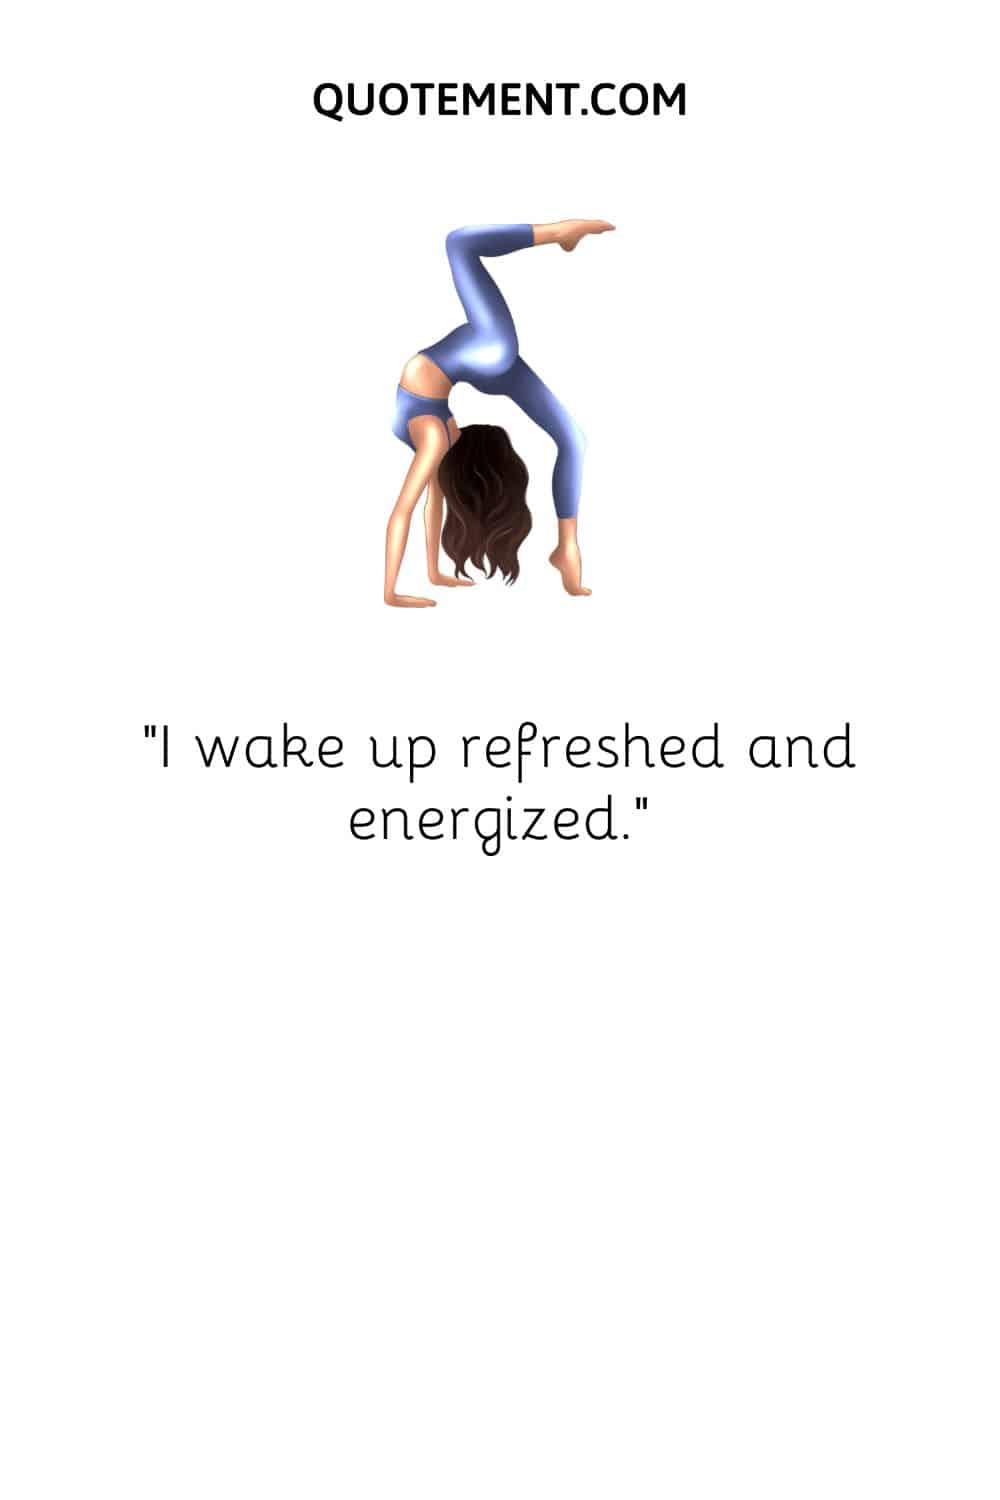 I wake up refreshed and energized